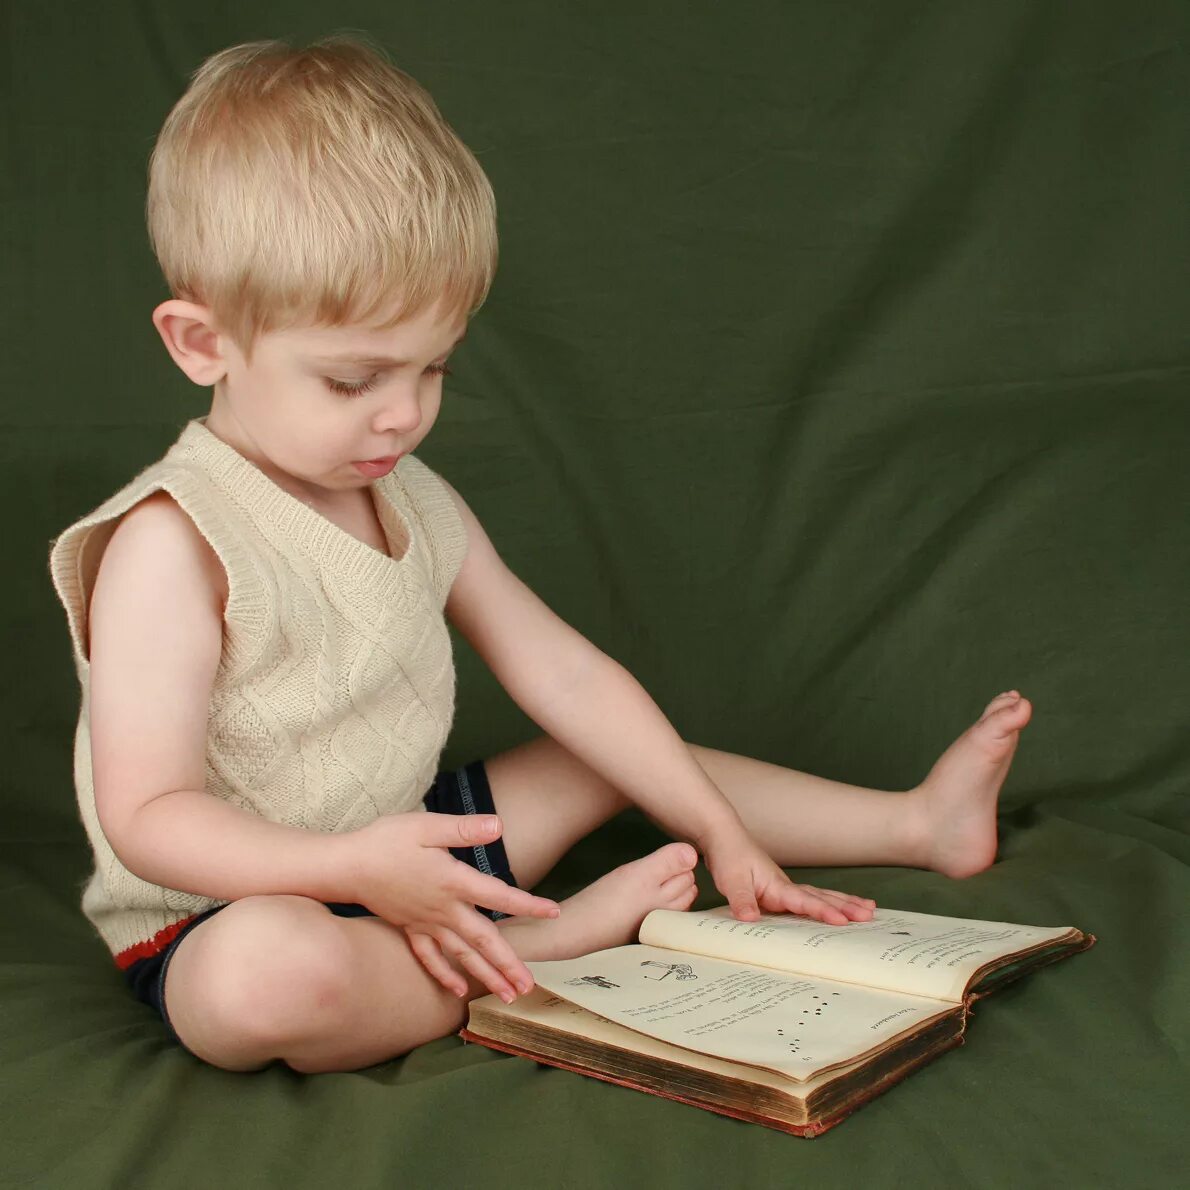 Children reference. Ребенок сидит на книжках. Ребенок с книгой в руках. Трехлетний ребенок. Ребенок референс.